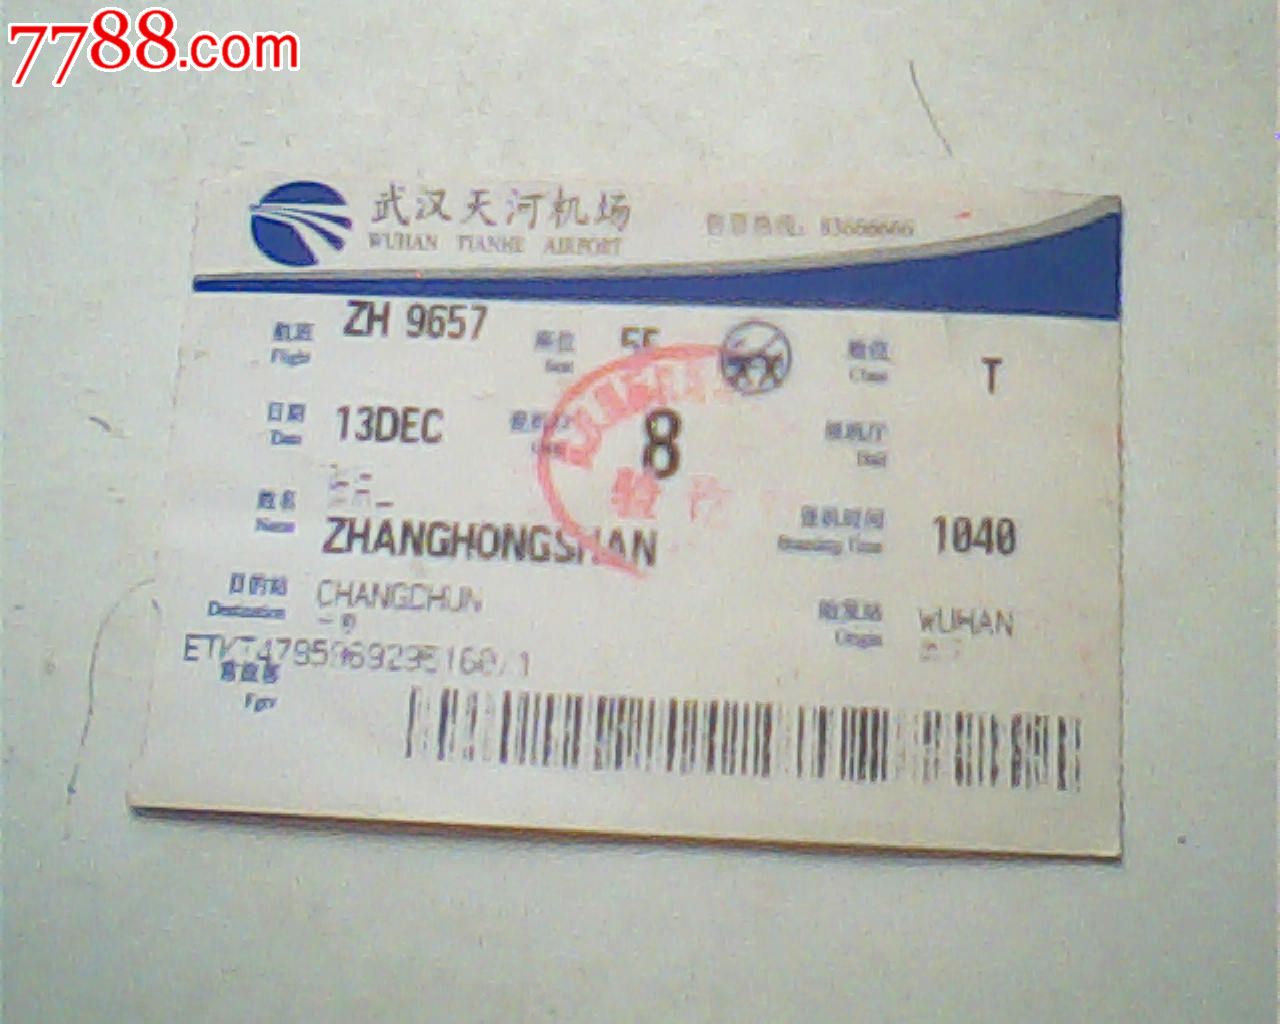 登机牌,武汉天河机场,蓝白顶边,背面地铁物业_